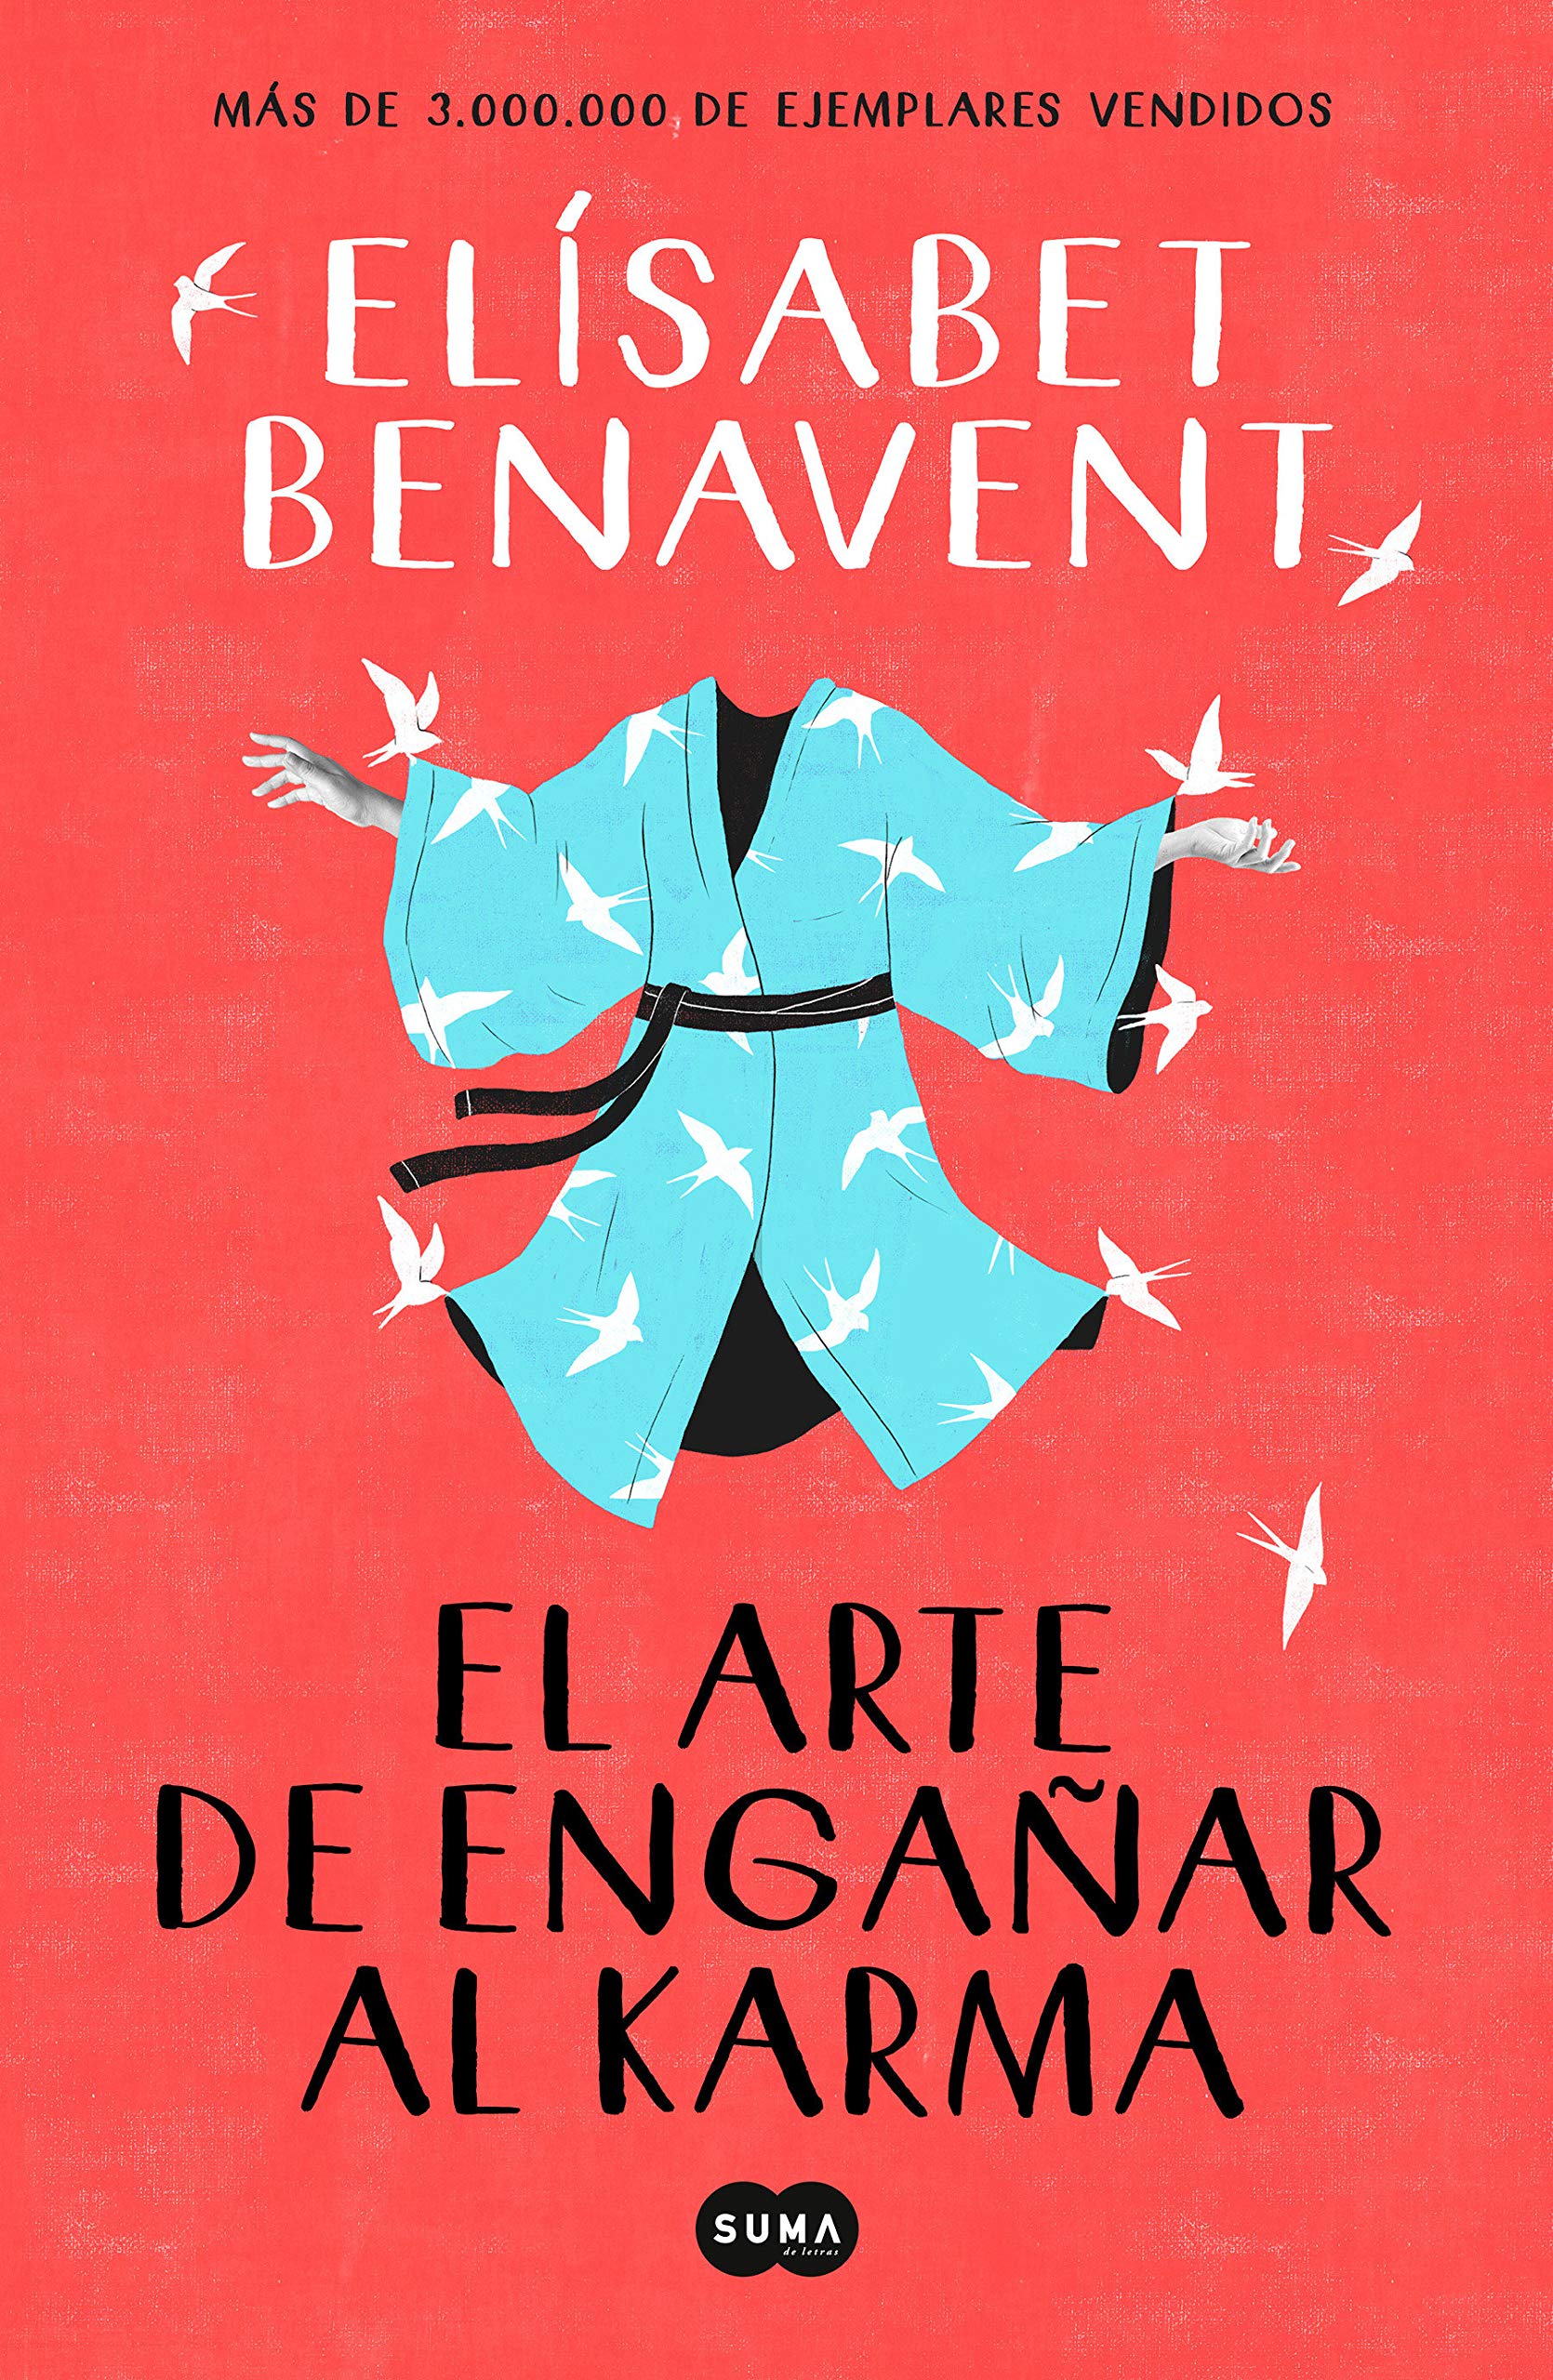 Los libros de Elisabet Benavent en orden del que más me gusta al que menos  